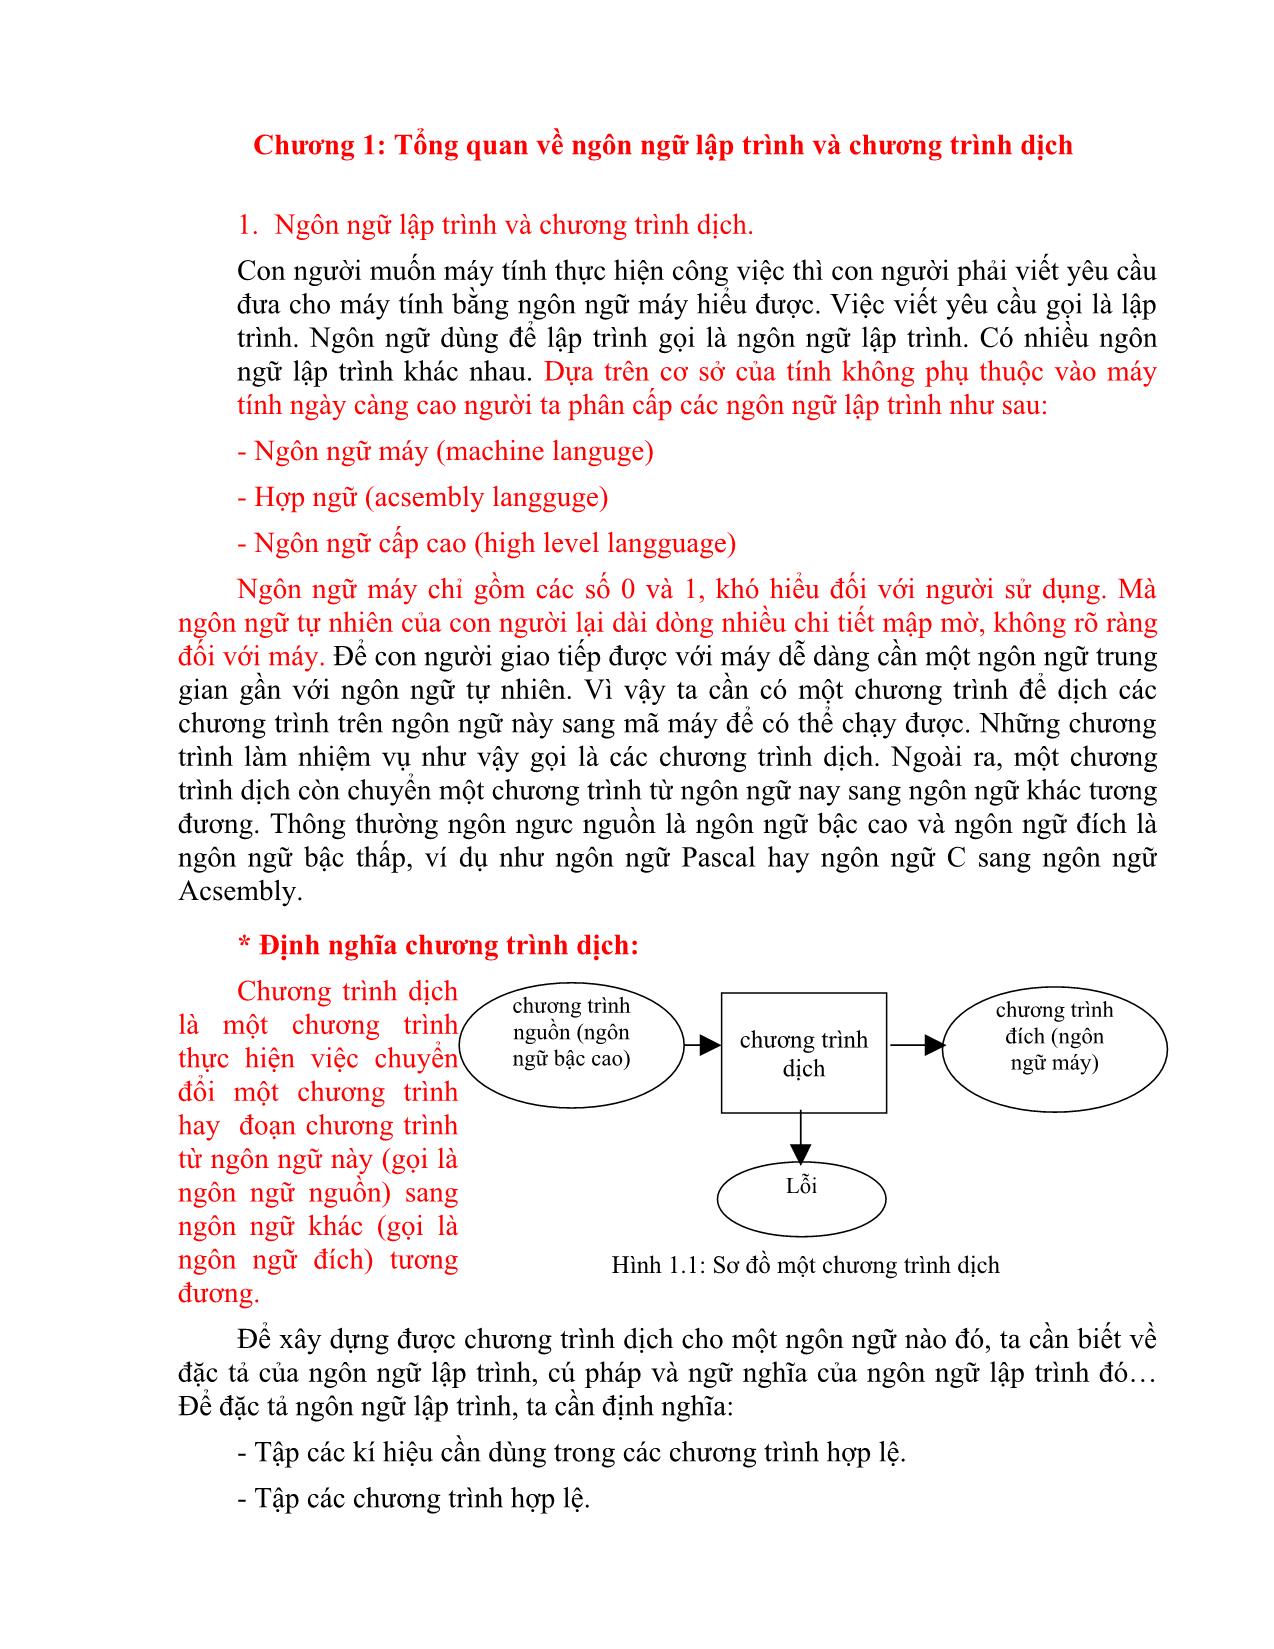 Giáo trình Chương trình dịch (Phần 1) trang 5